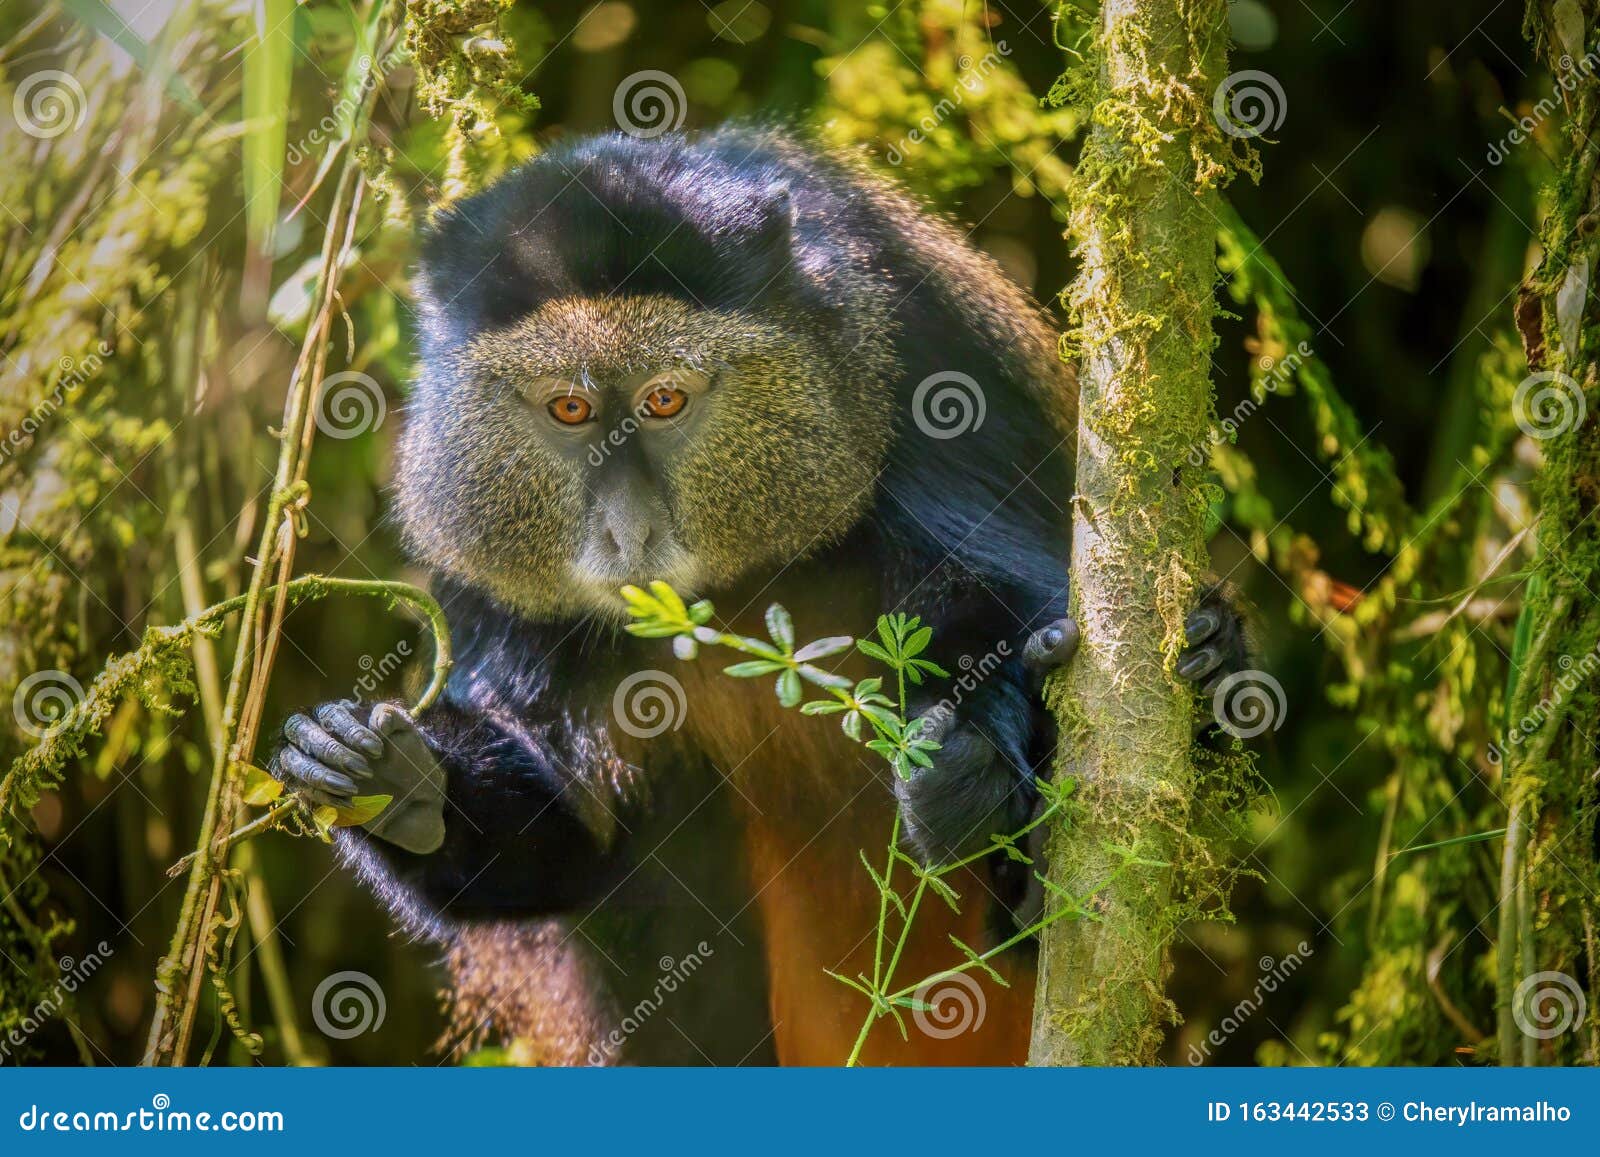 a golden monkey in a bamboo forest in rwanda.